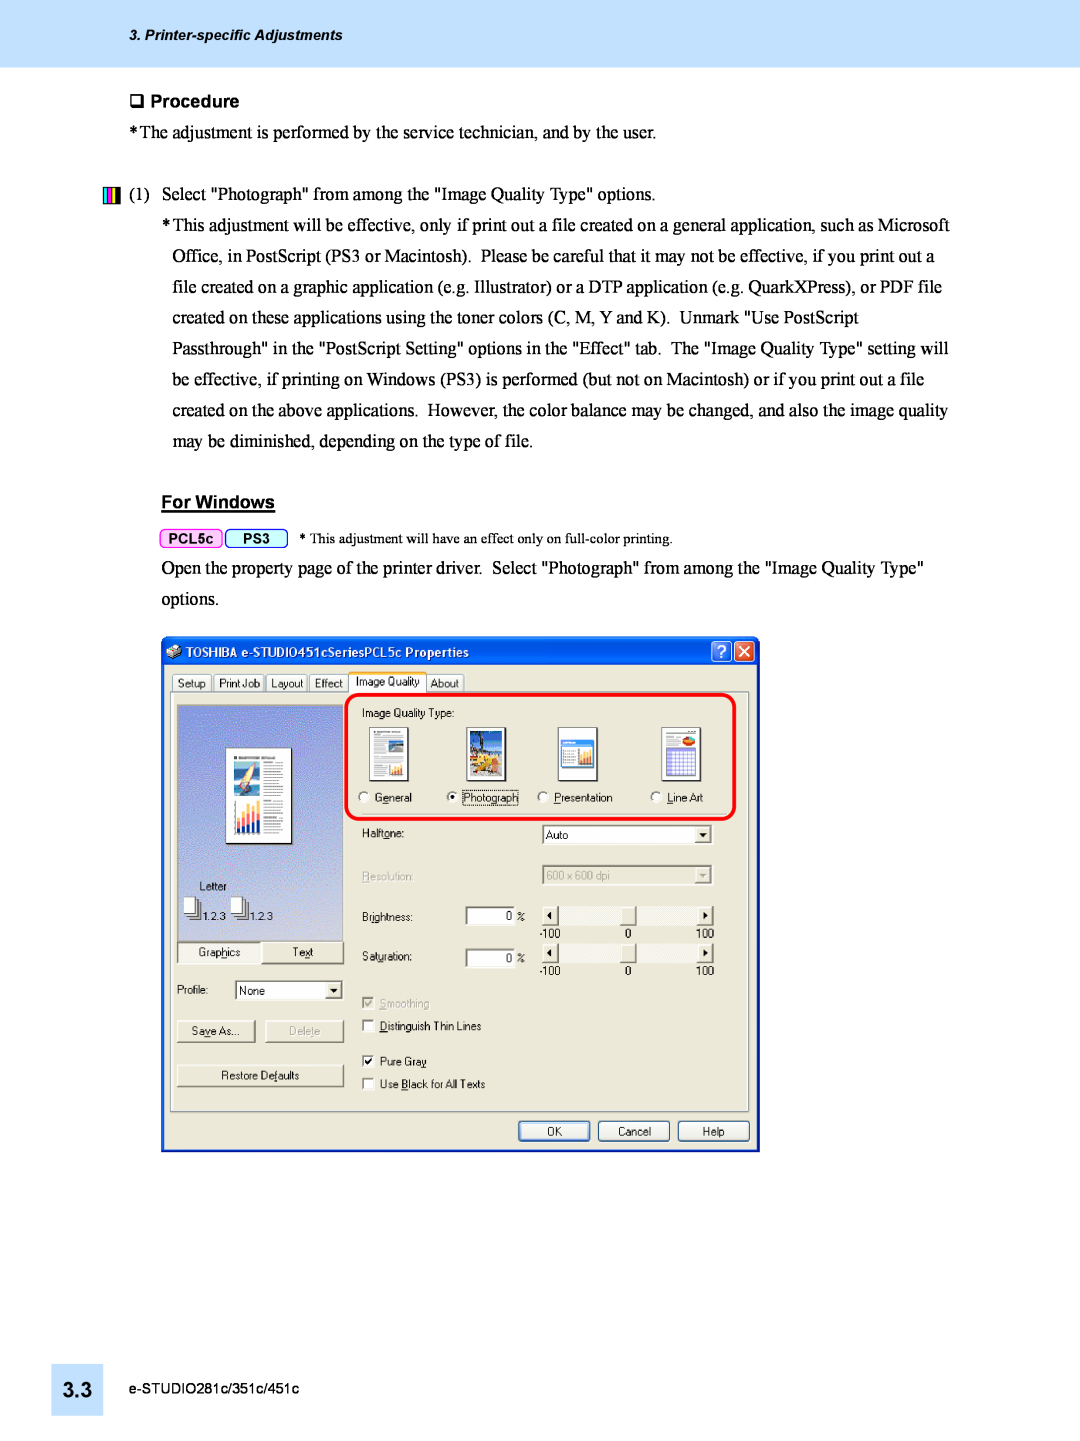 Toshiba 351C, 451C manual ‰ Procedure, For Windows, e-STUDIO281c/351c/451c 